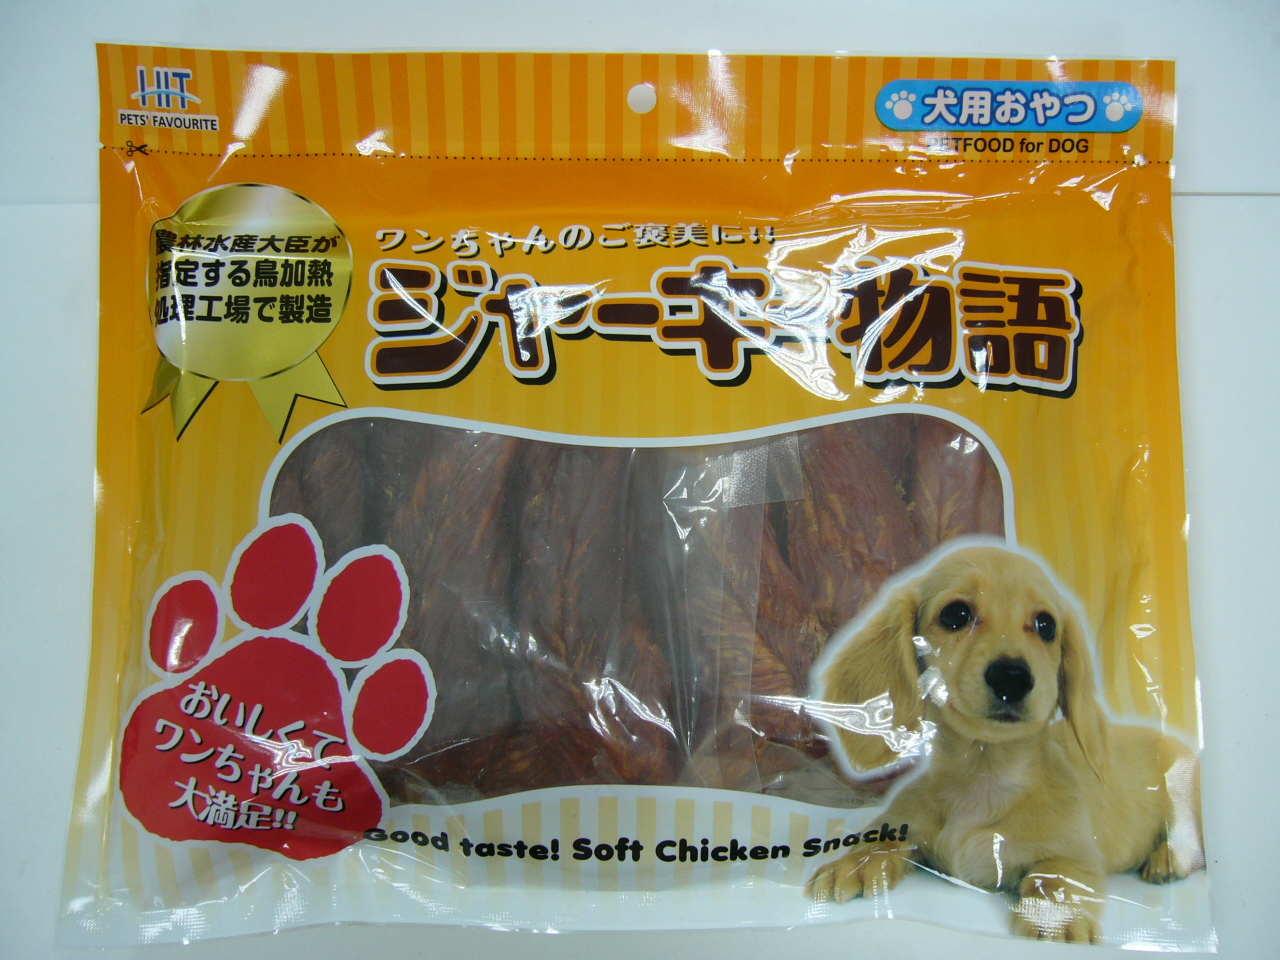 海特嫩雞肉片(500g)*
HIT Soft chicken jerky @ 500g(250g x 2)